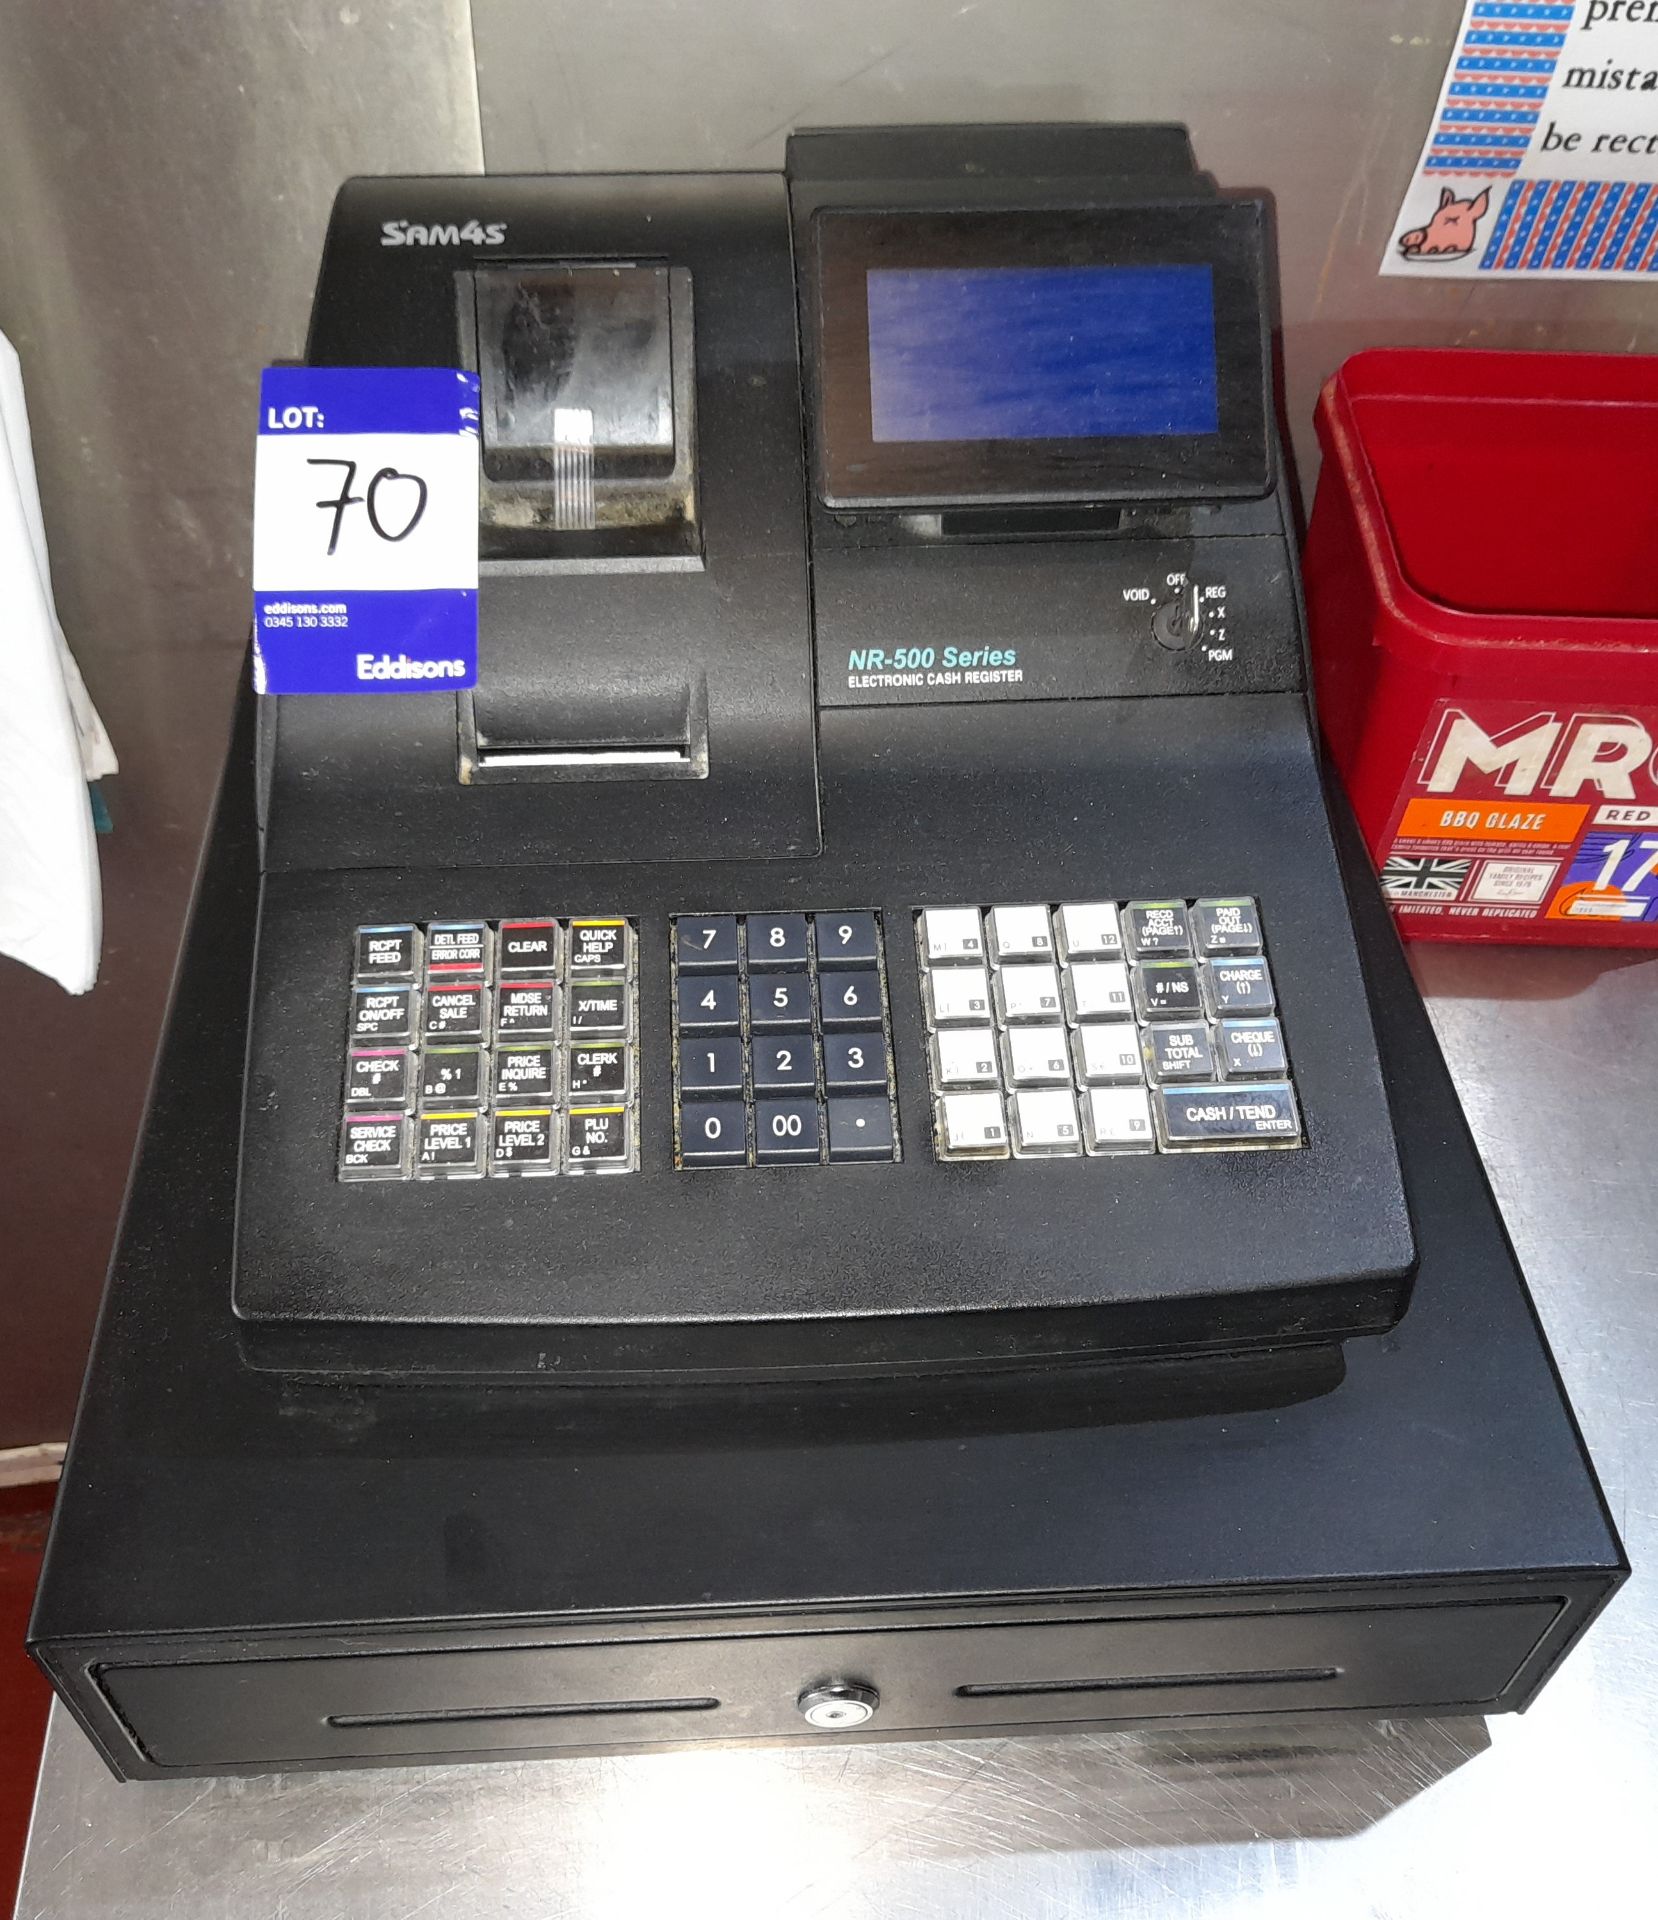 SAM 4S NR 500 cash register